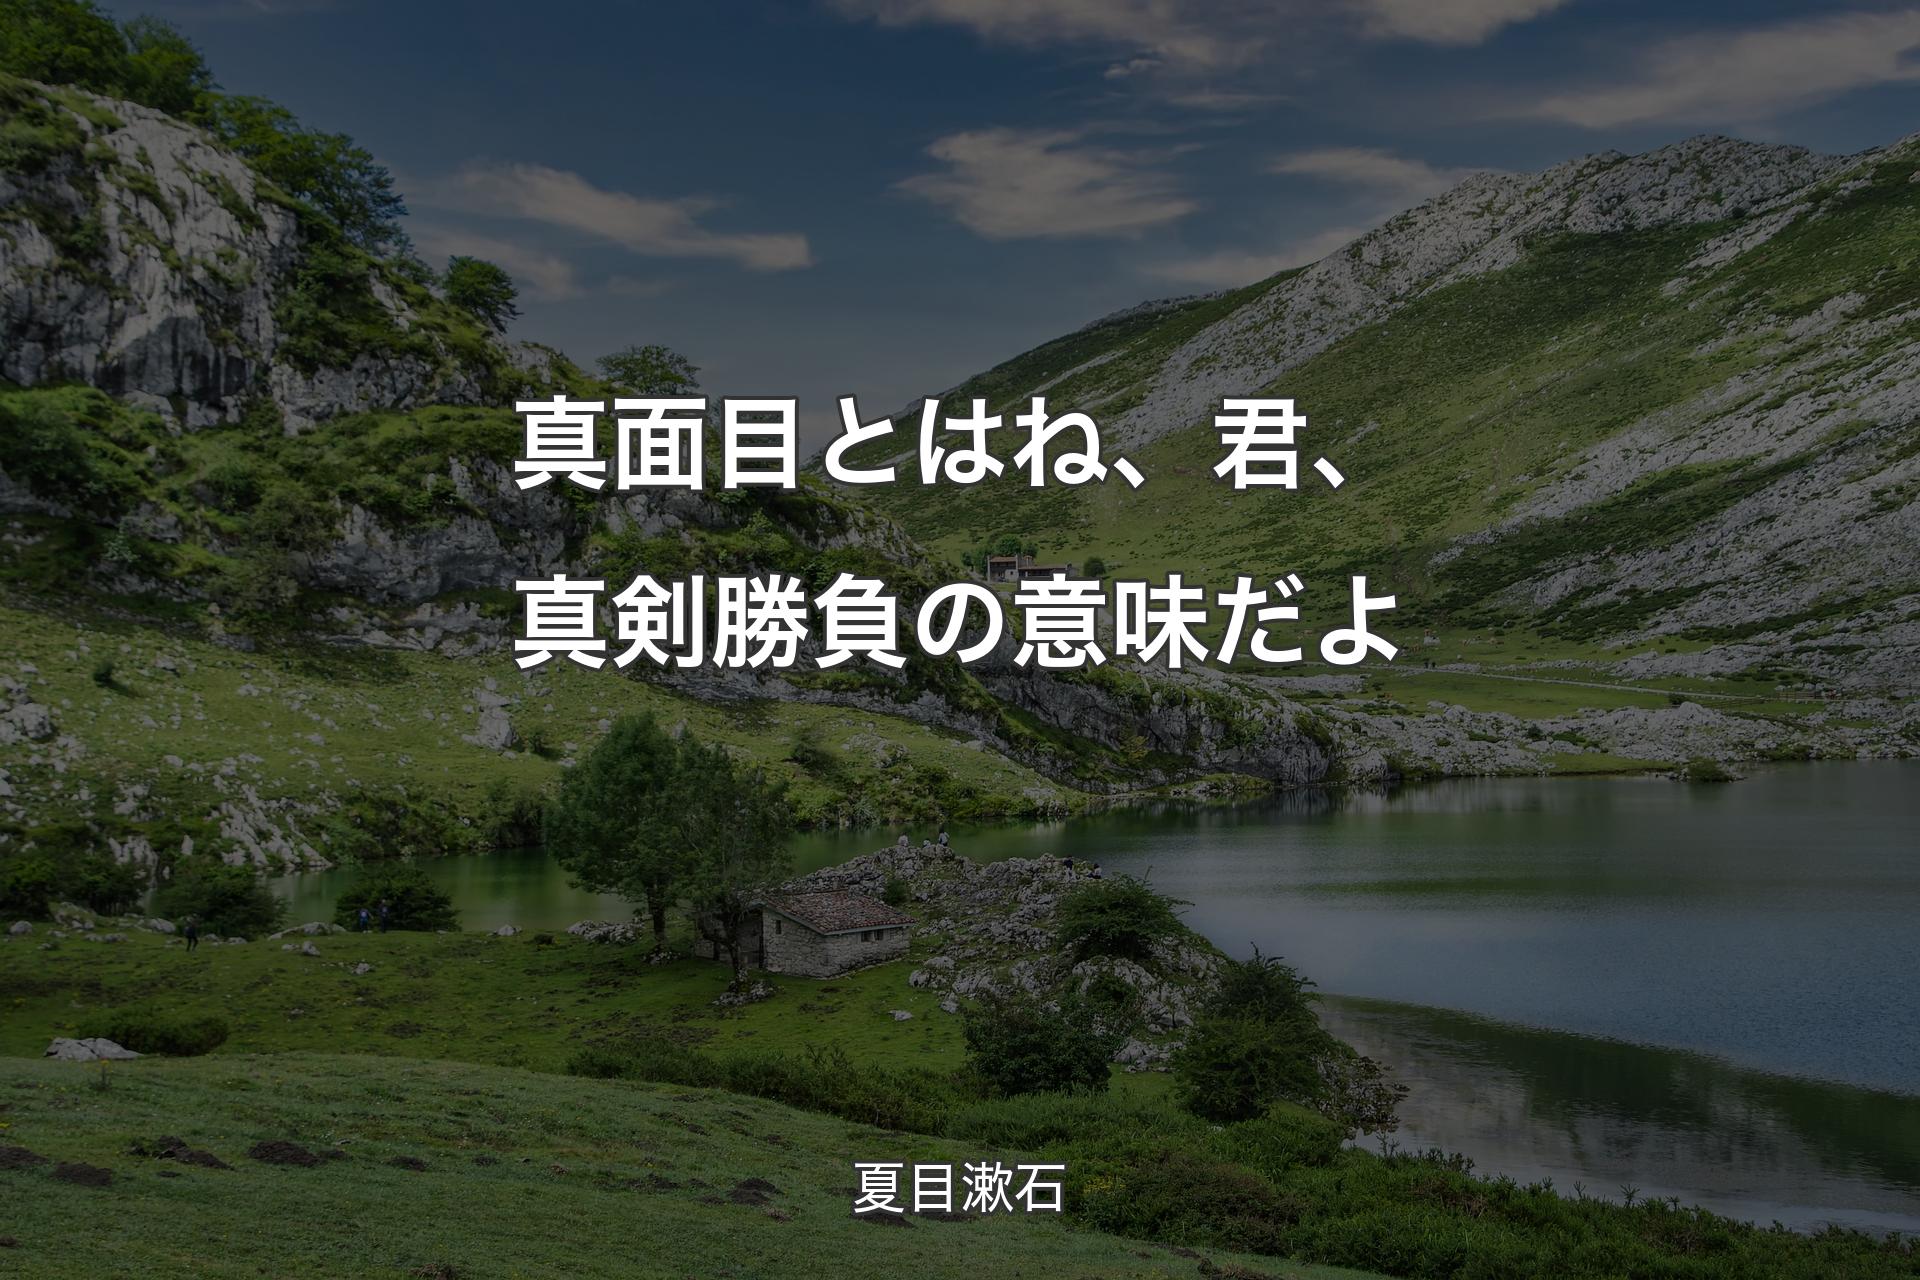 【背景1】真面目とはね、君、真剣勝負の意味だよ - 夏目漱石